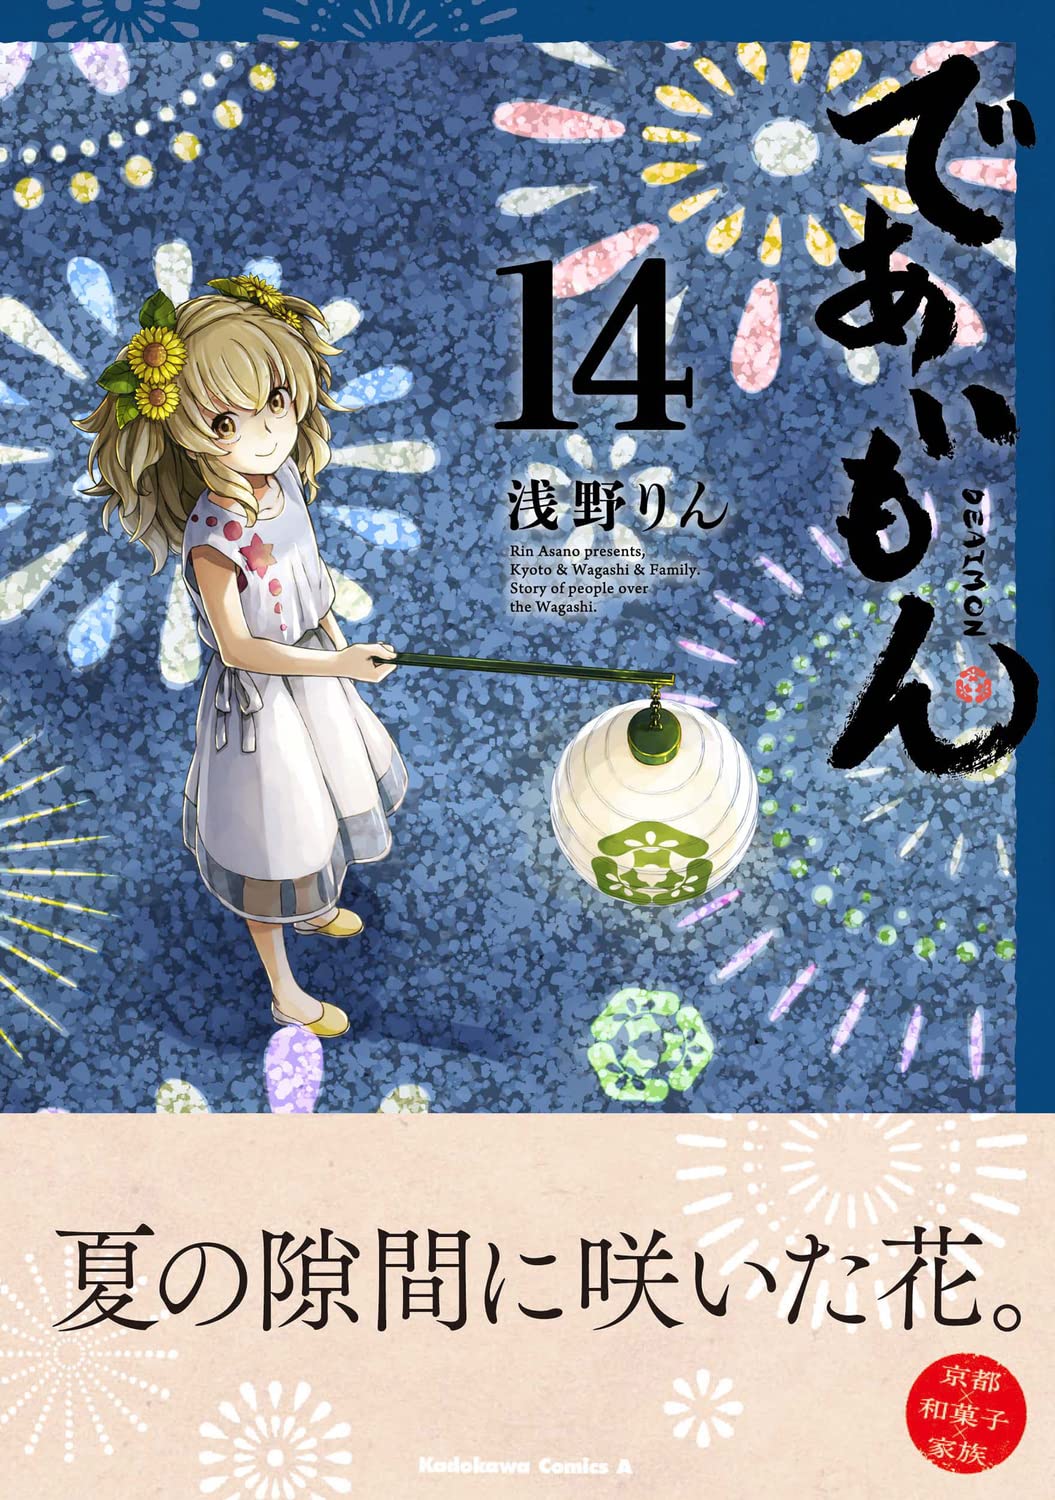 Deaimon Official Comic Anthology ~ En ~ Japanese comic Manga New